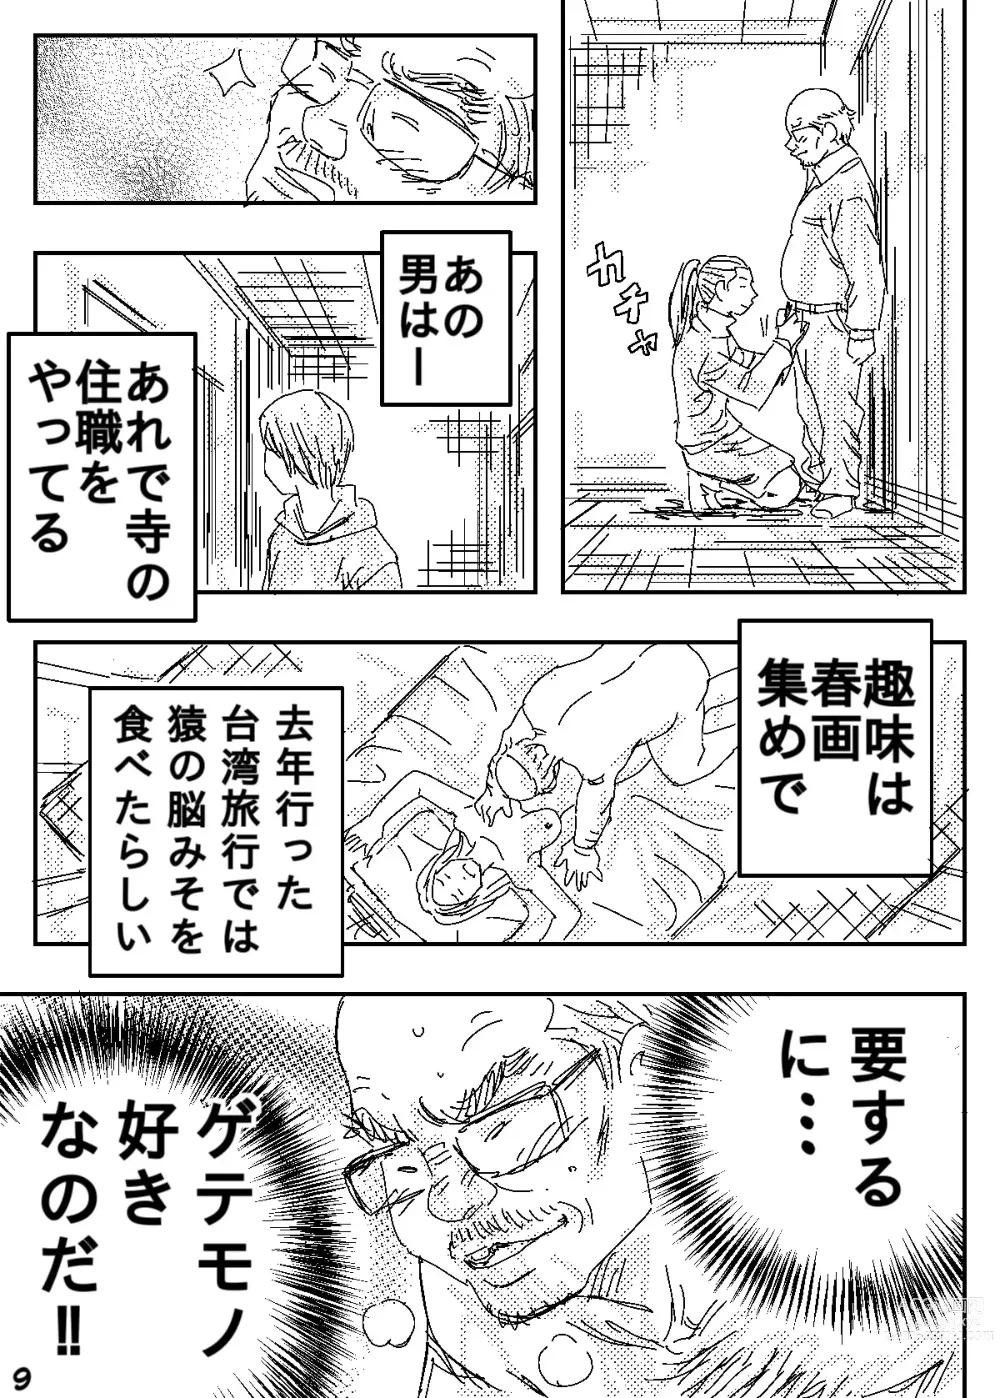 Page 9 of doujinshi Gesu no Kiwami Kazoku